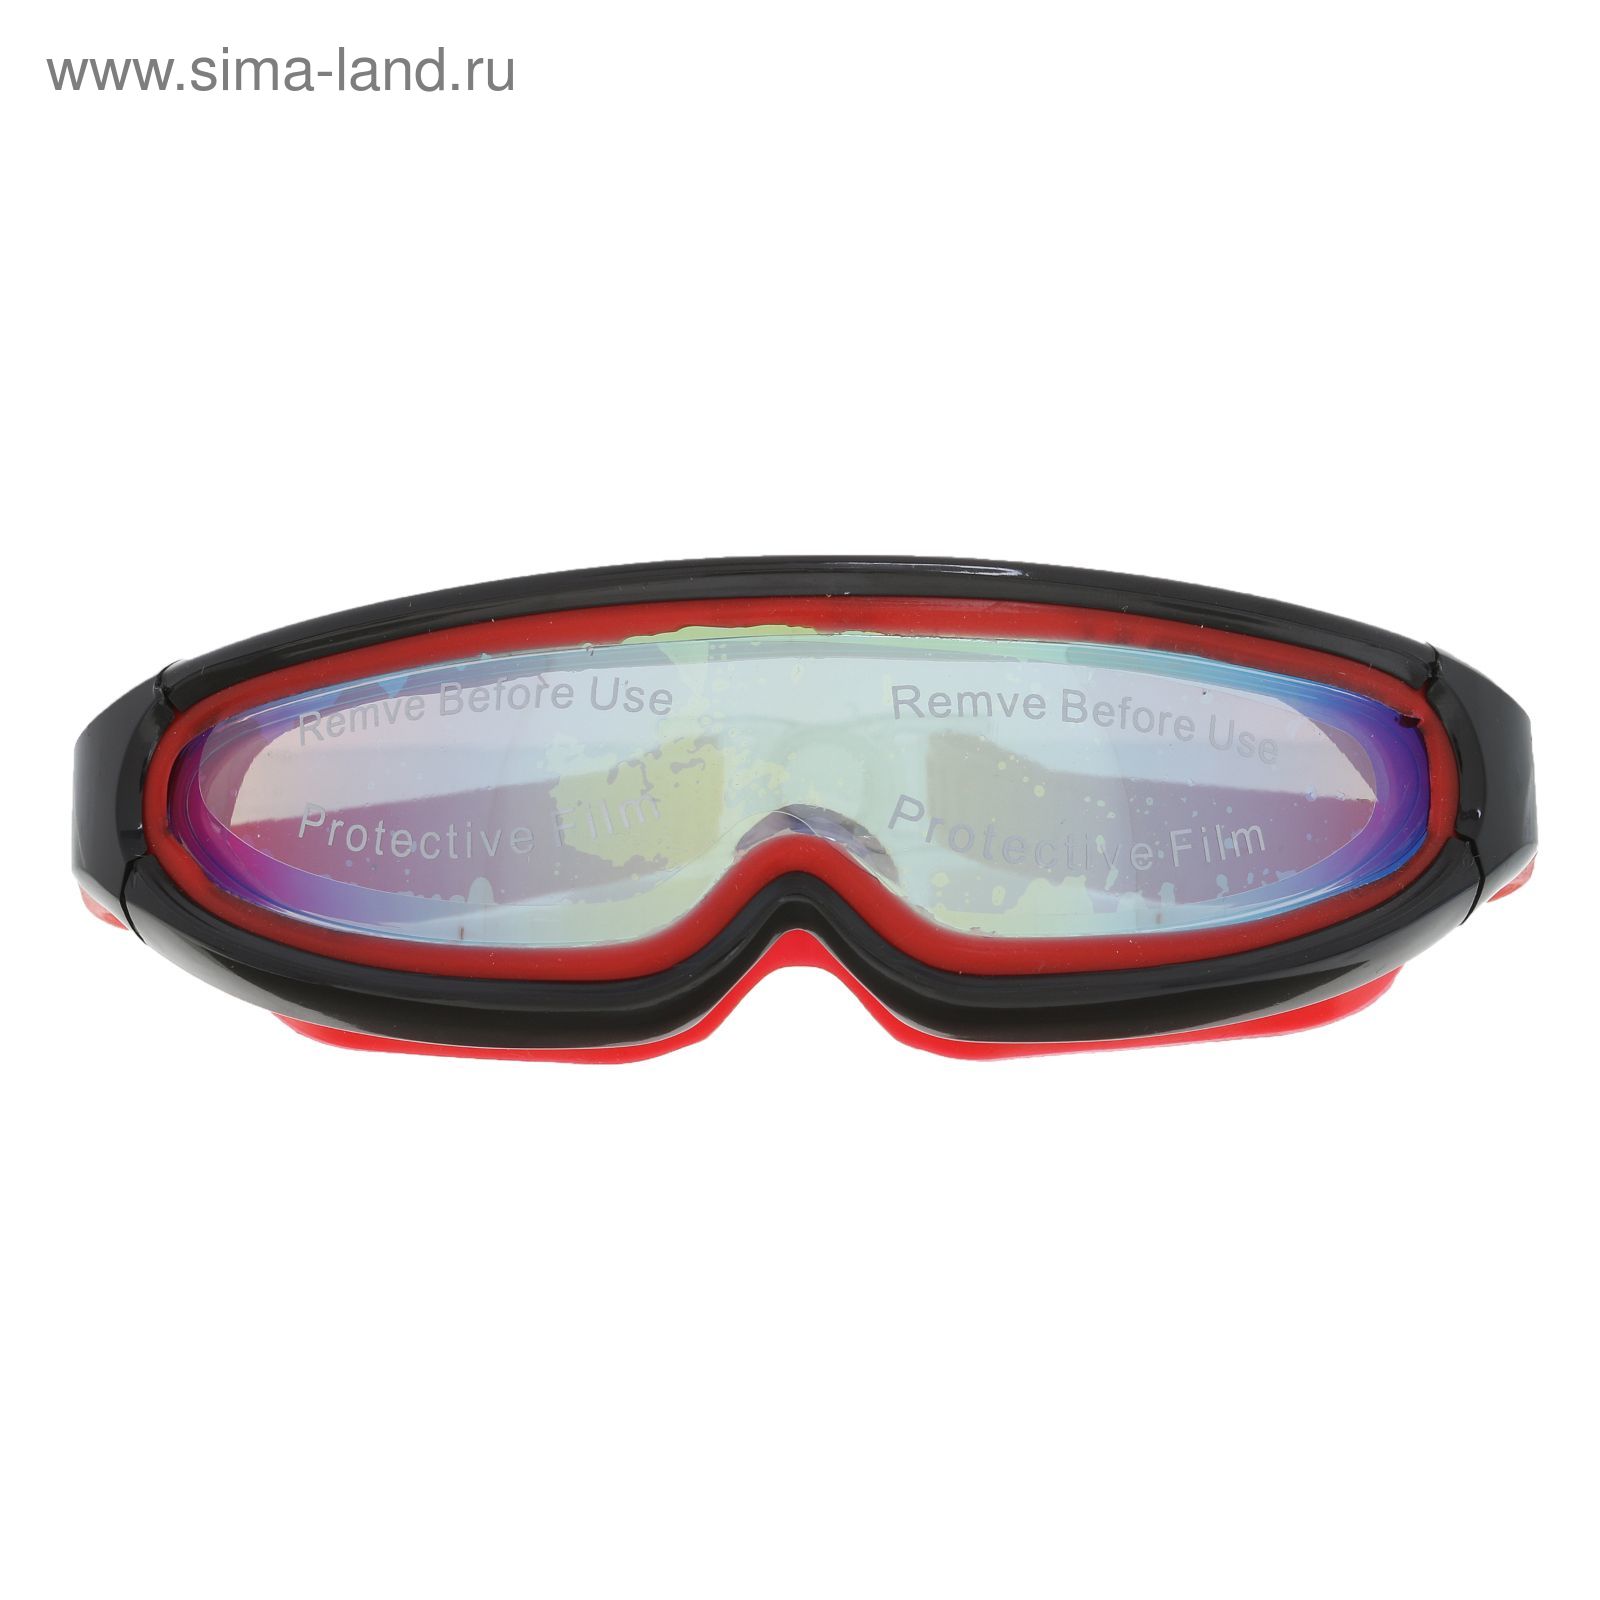 Очки для плавания, взрослые SS37, цвета микс